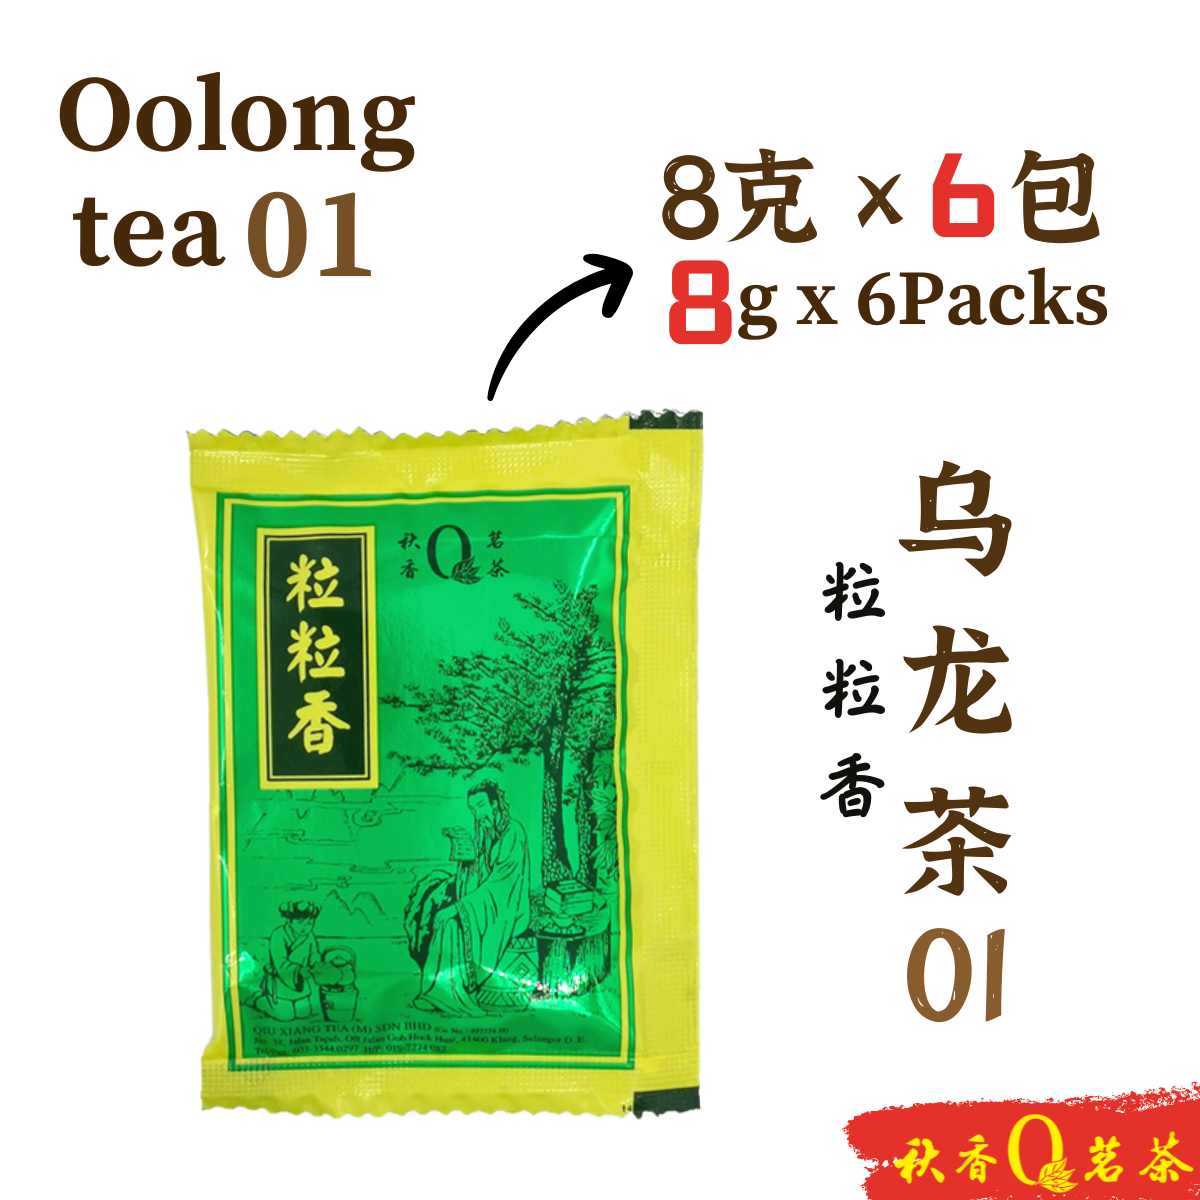 粒粒香 Li Li Xiang tea【6 packs x 8g】|【Oolong tea 乌龙茶】